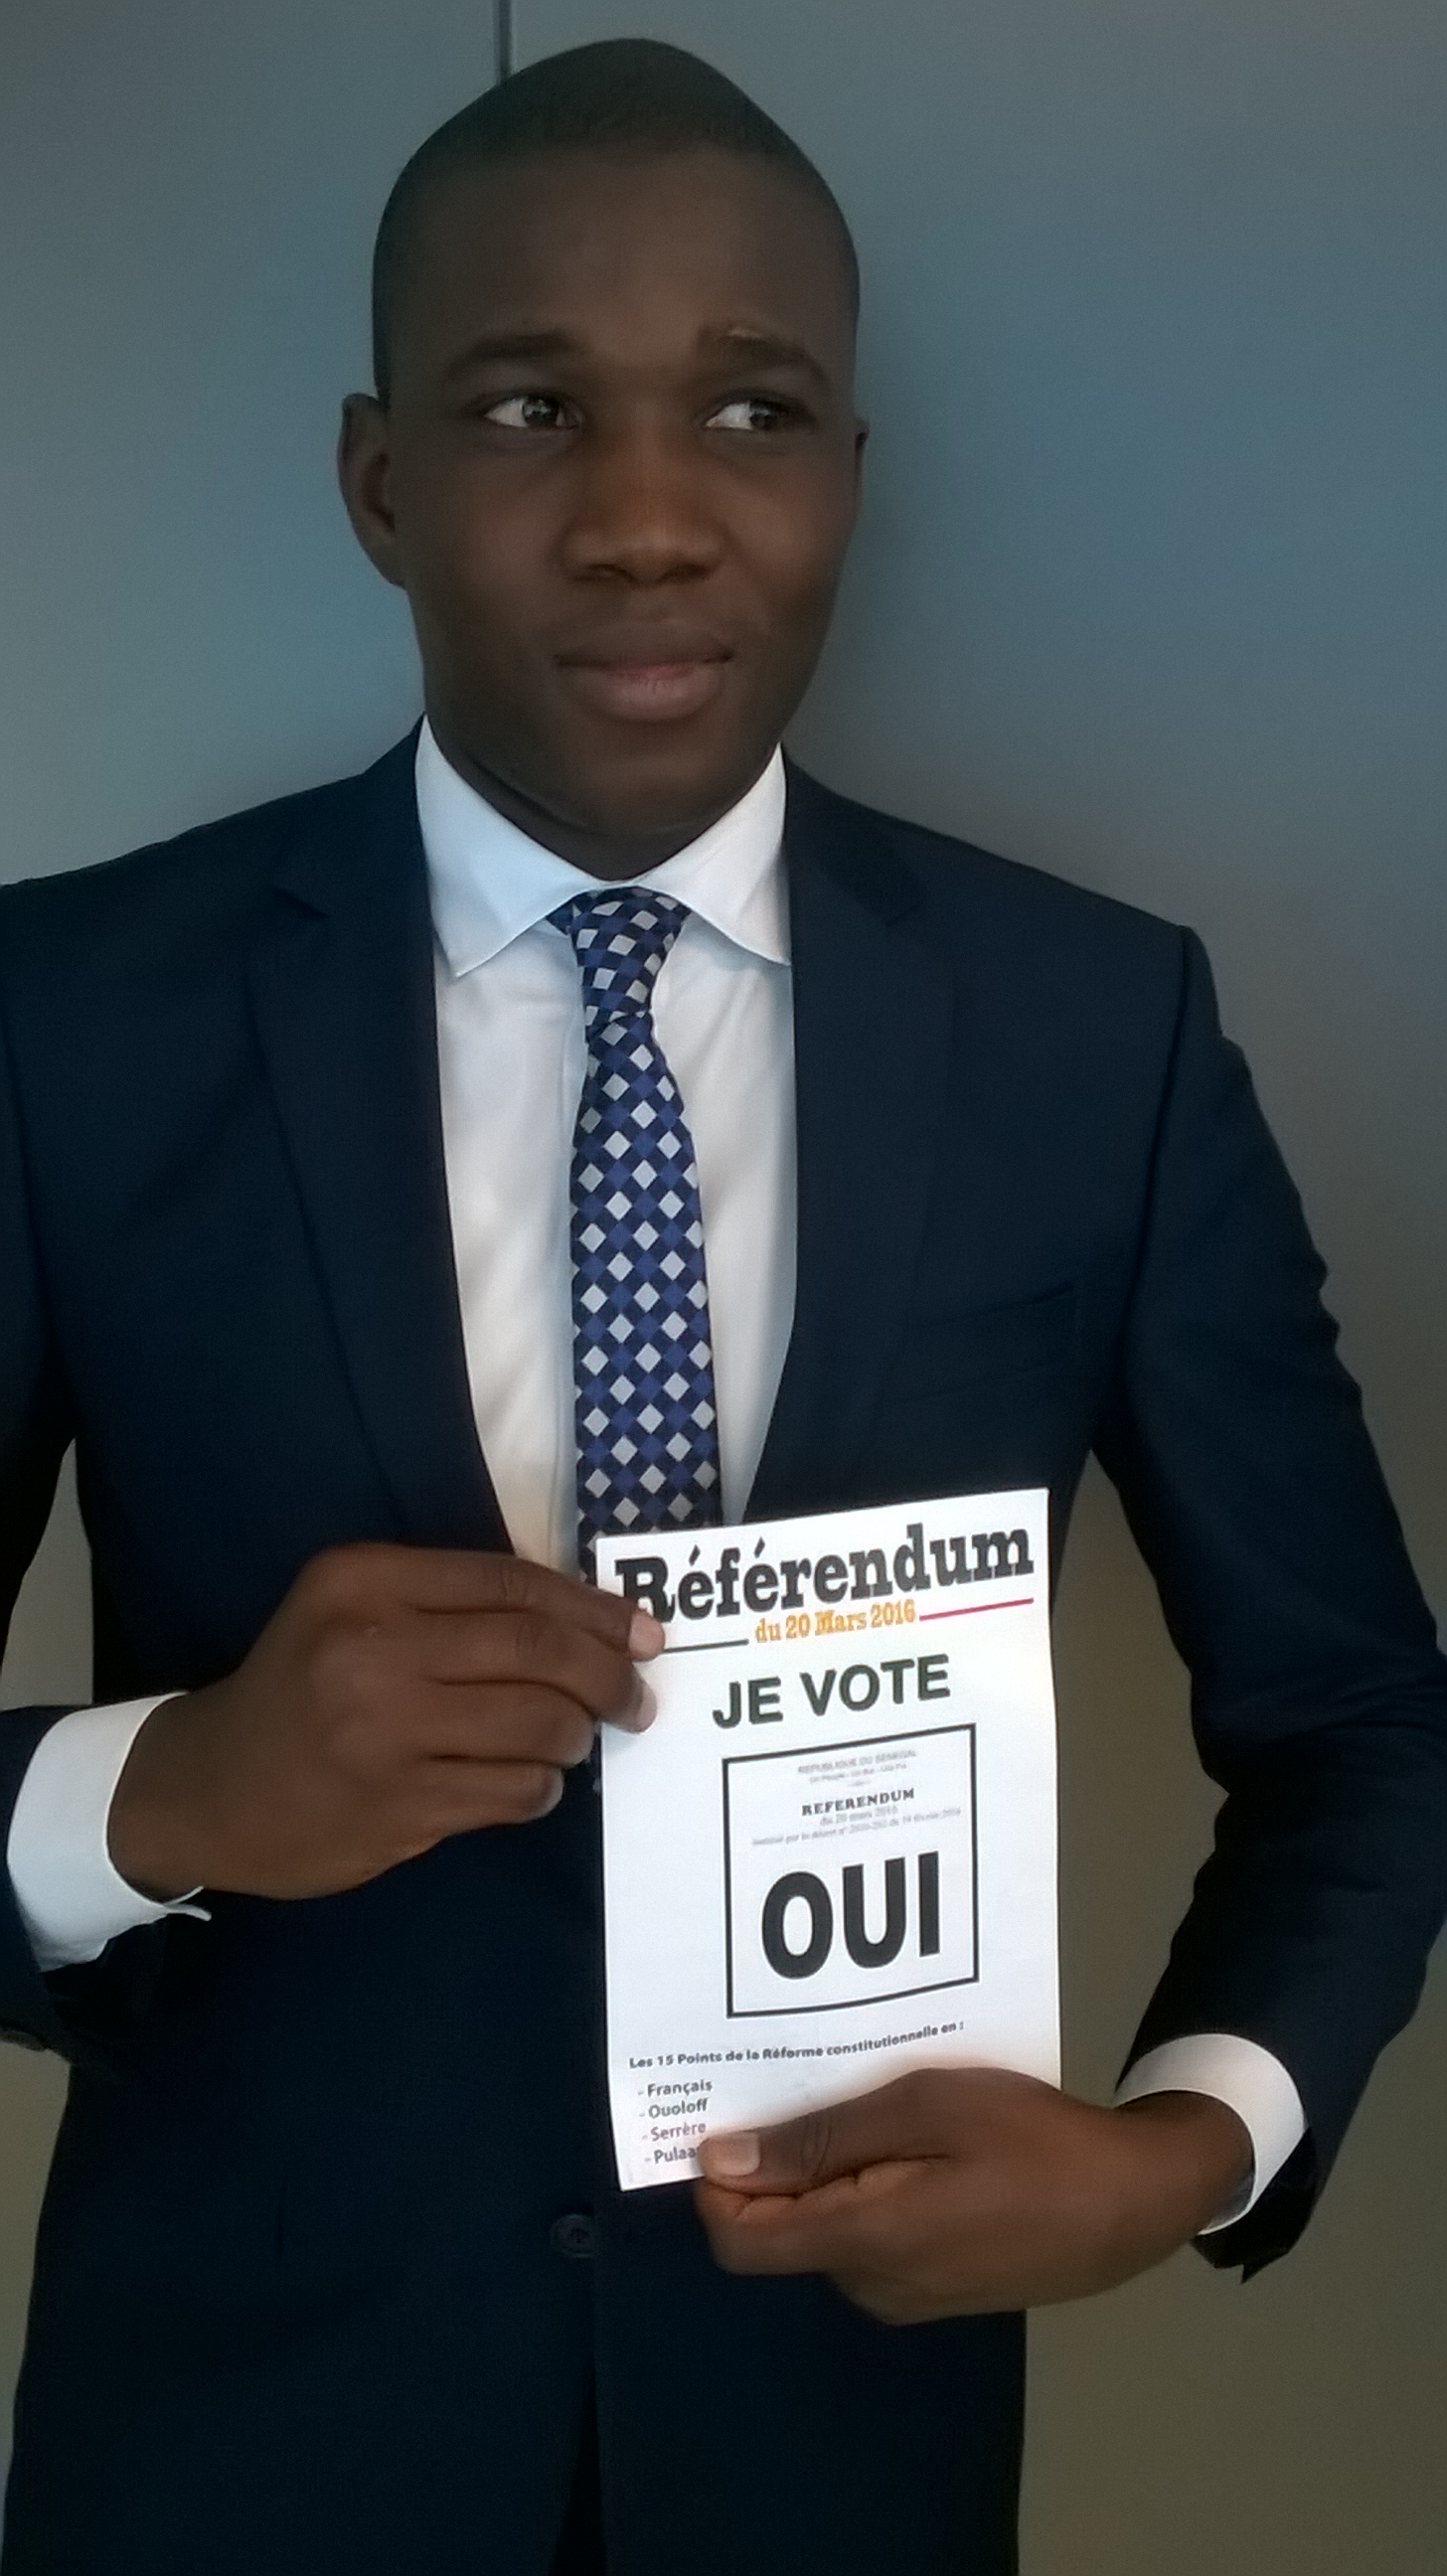  NIORO : Le oui triomphe au Référendum